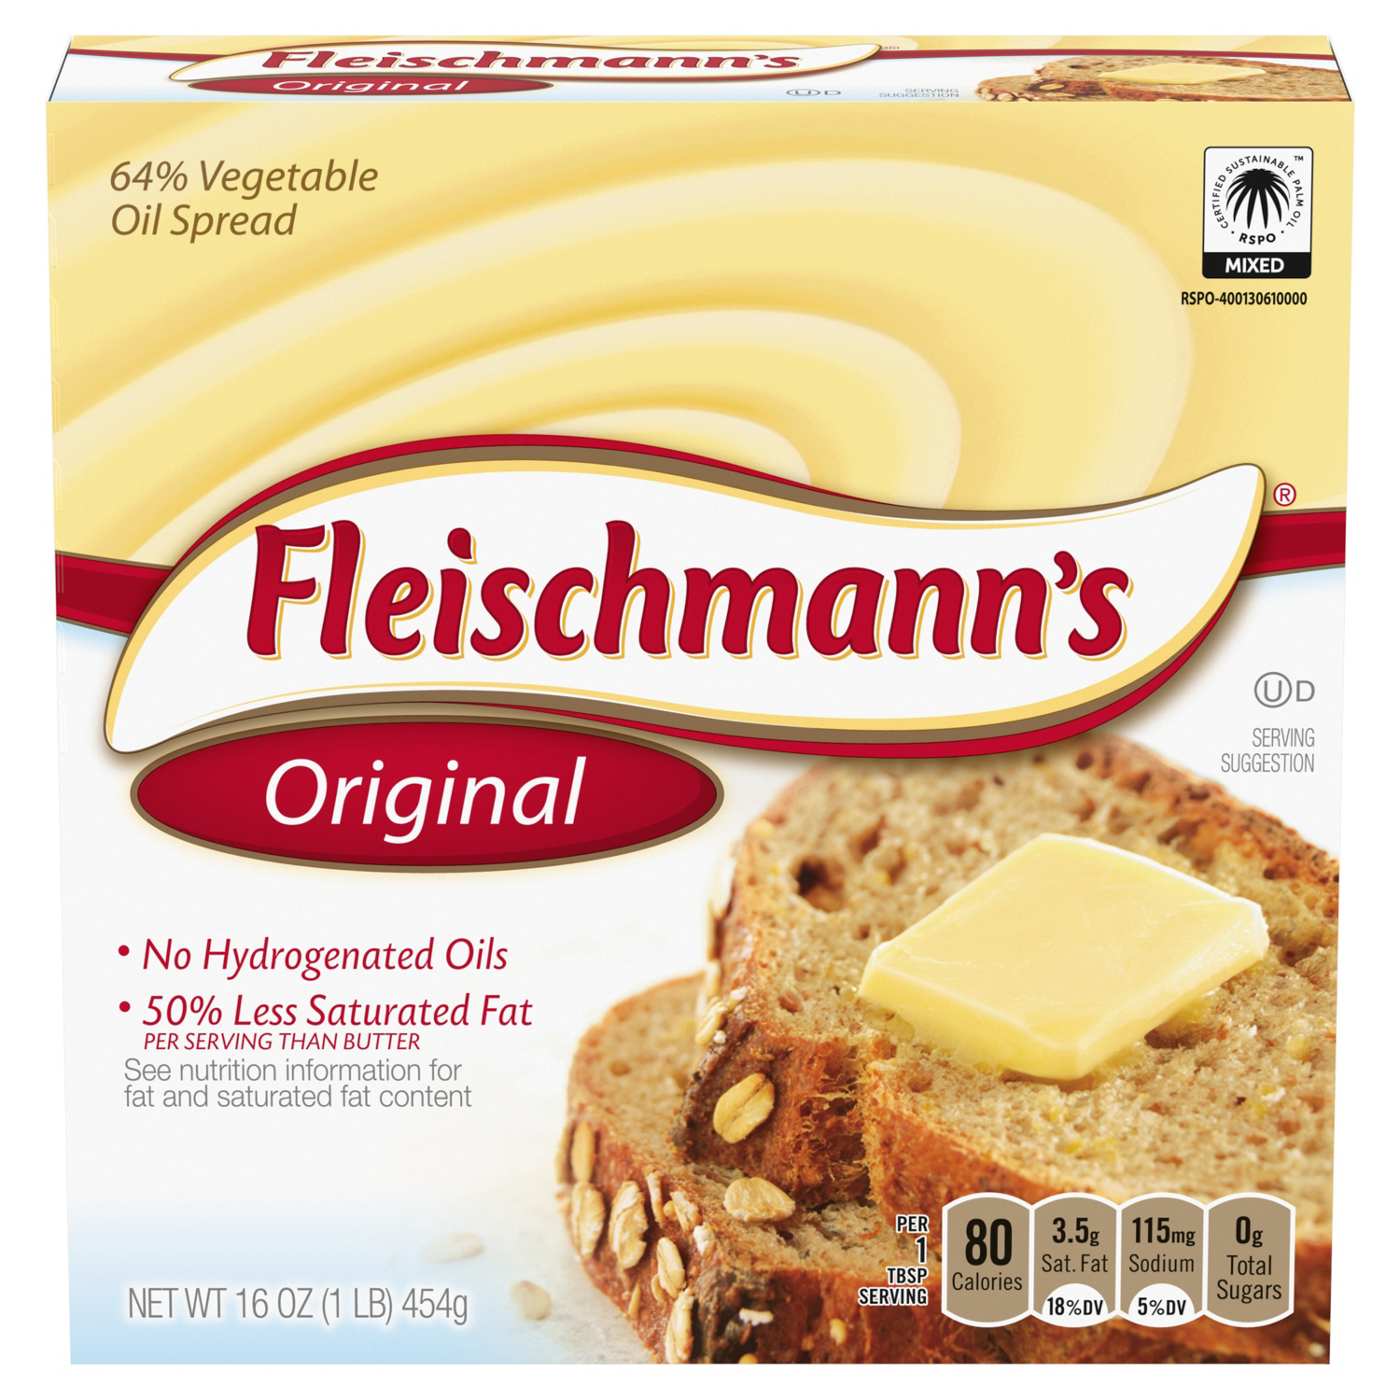 Fleischmann's Original Vegetable Oil Spread Sticks; image 1 of 4